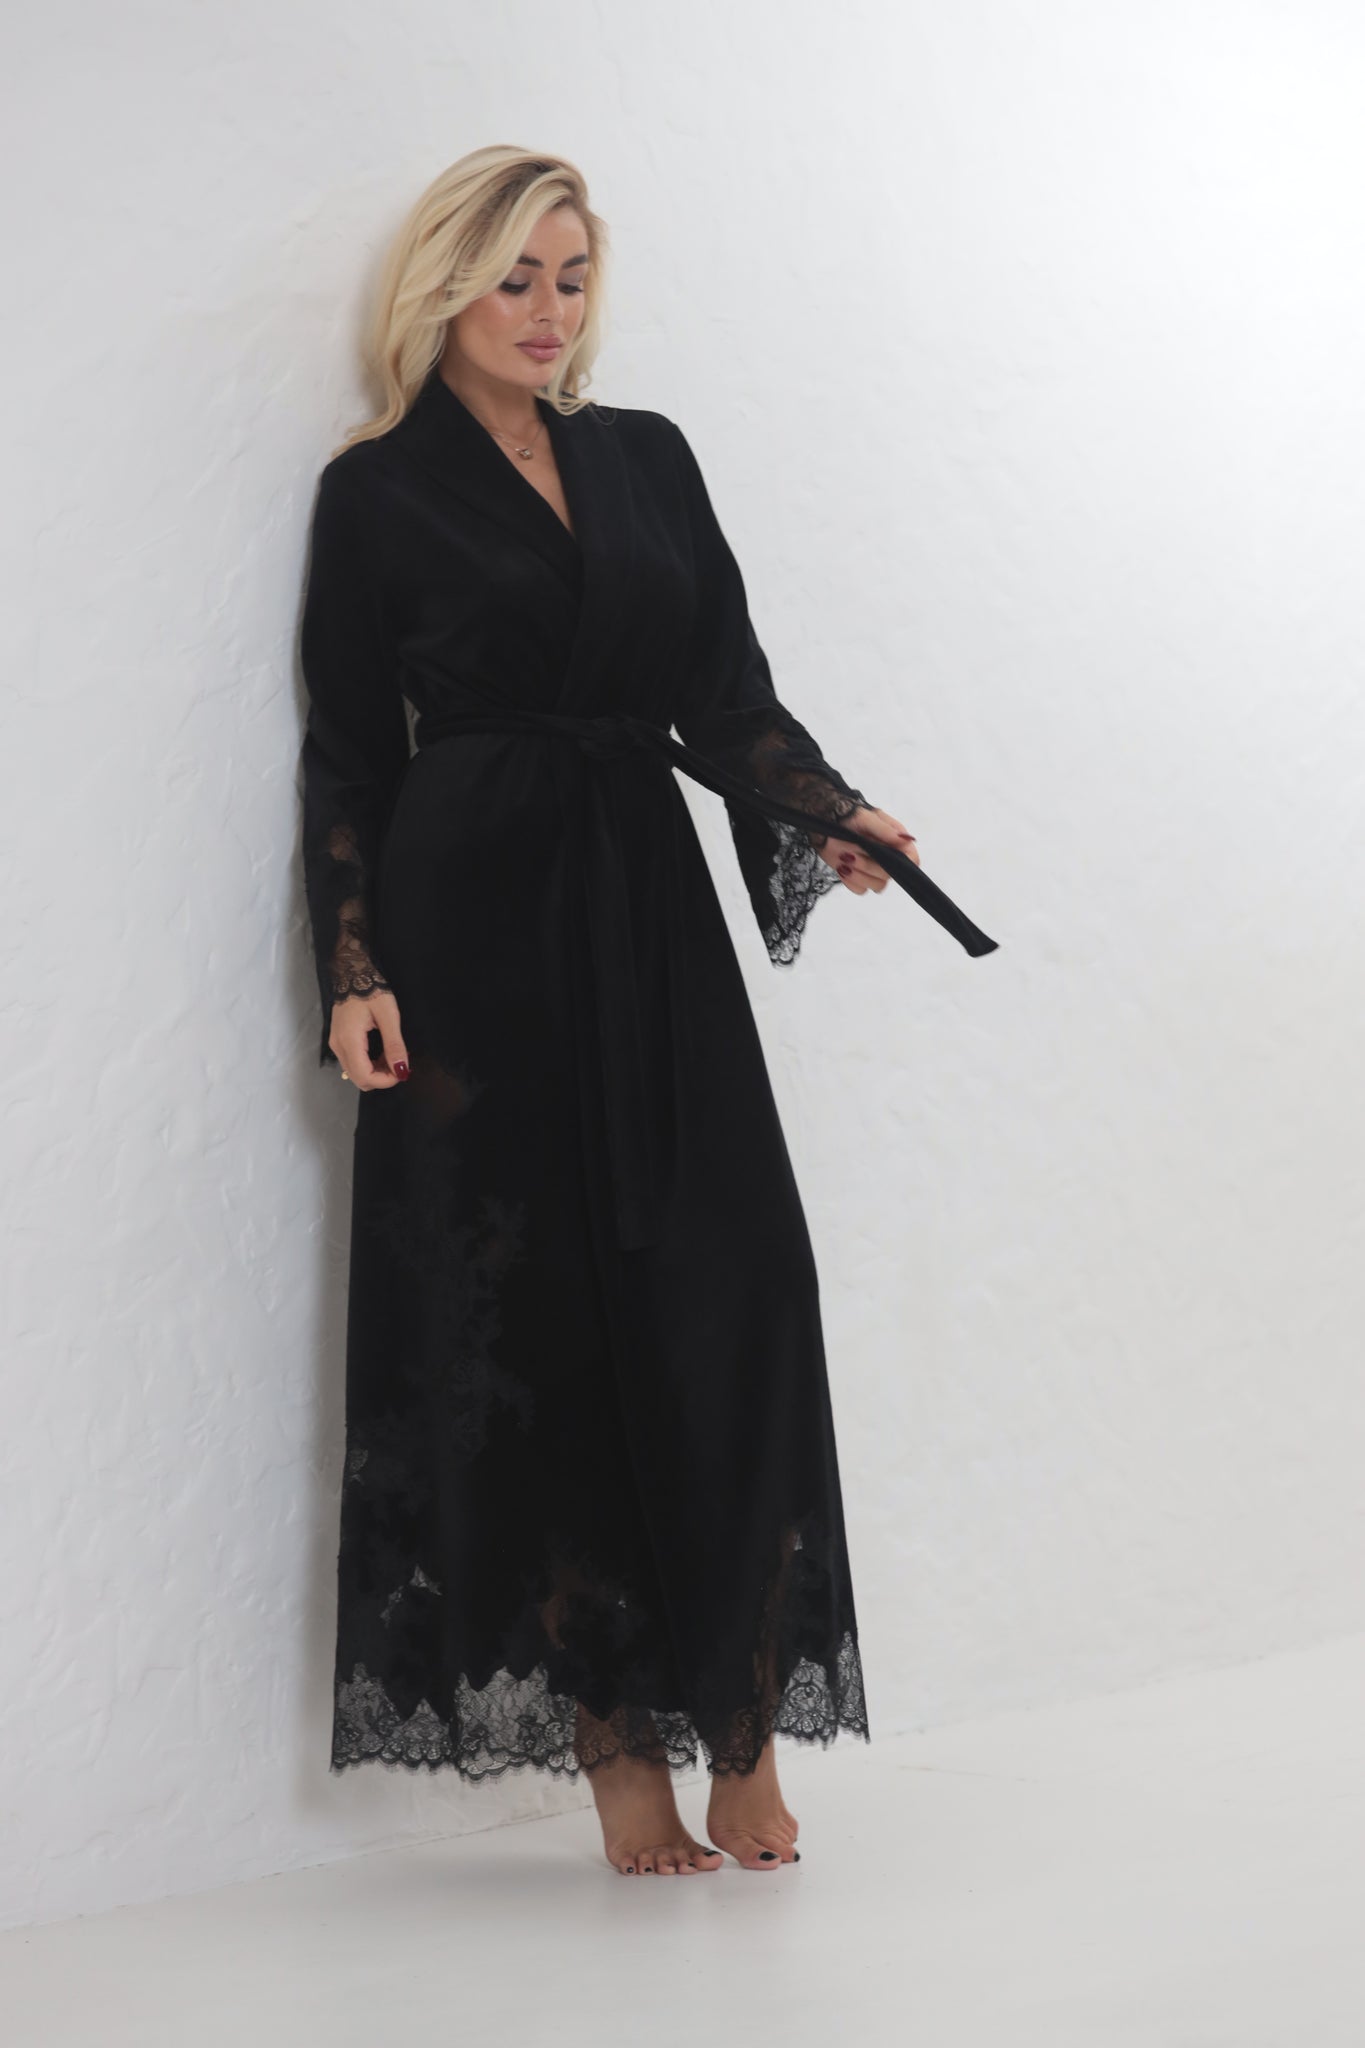 Madeleine black velor long robe